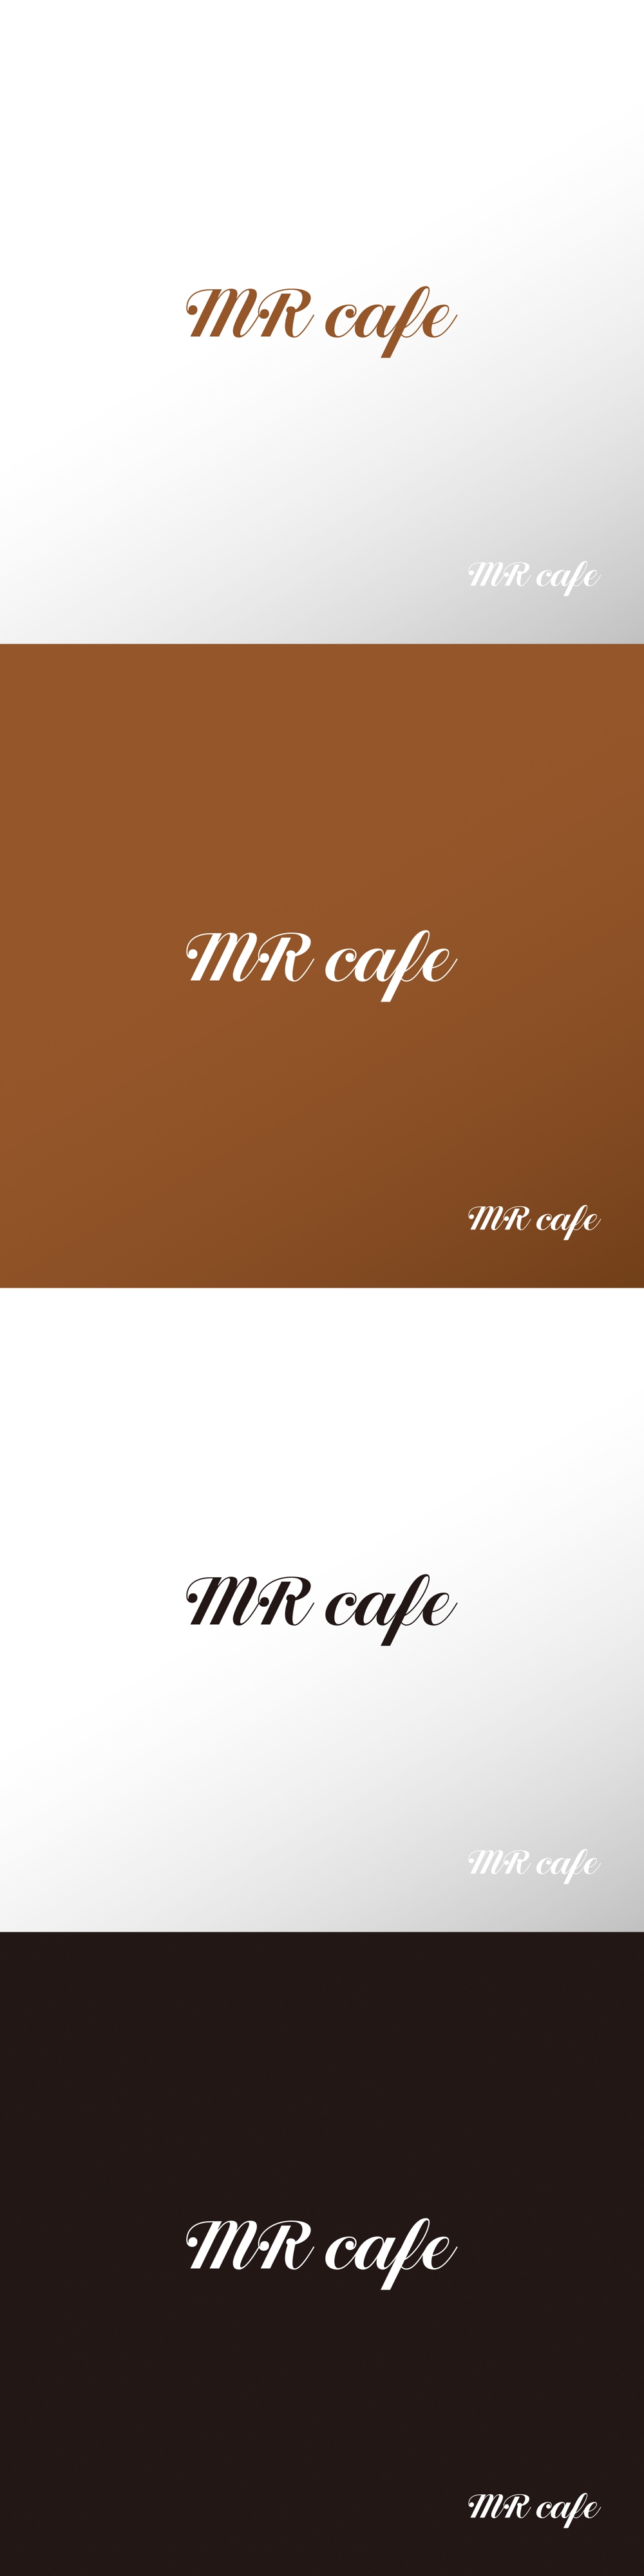 カフェ_MR cafe_ロゴA1.jpg